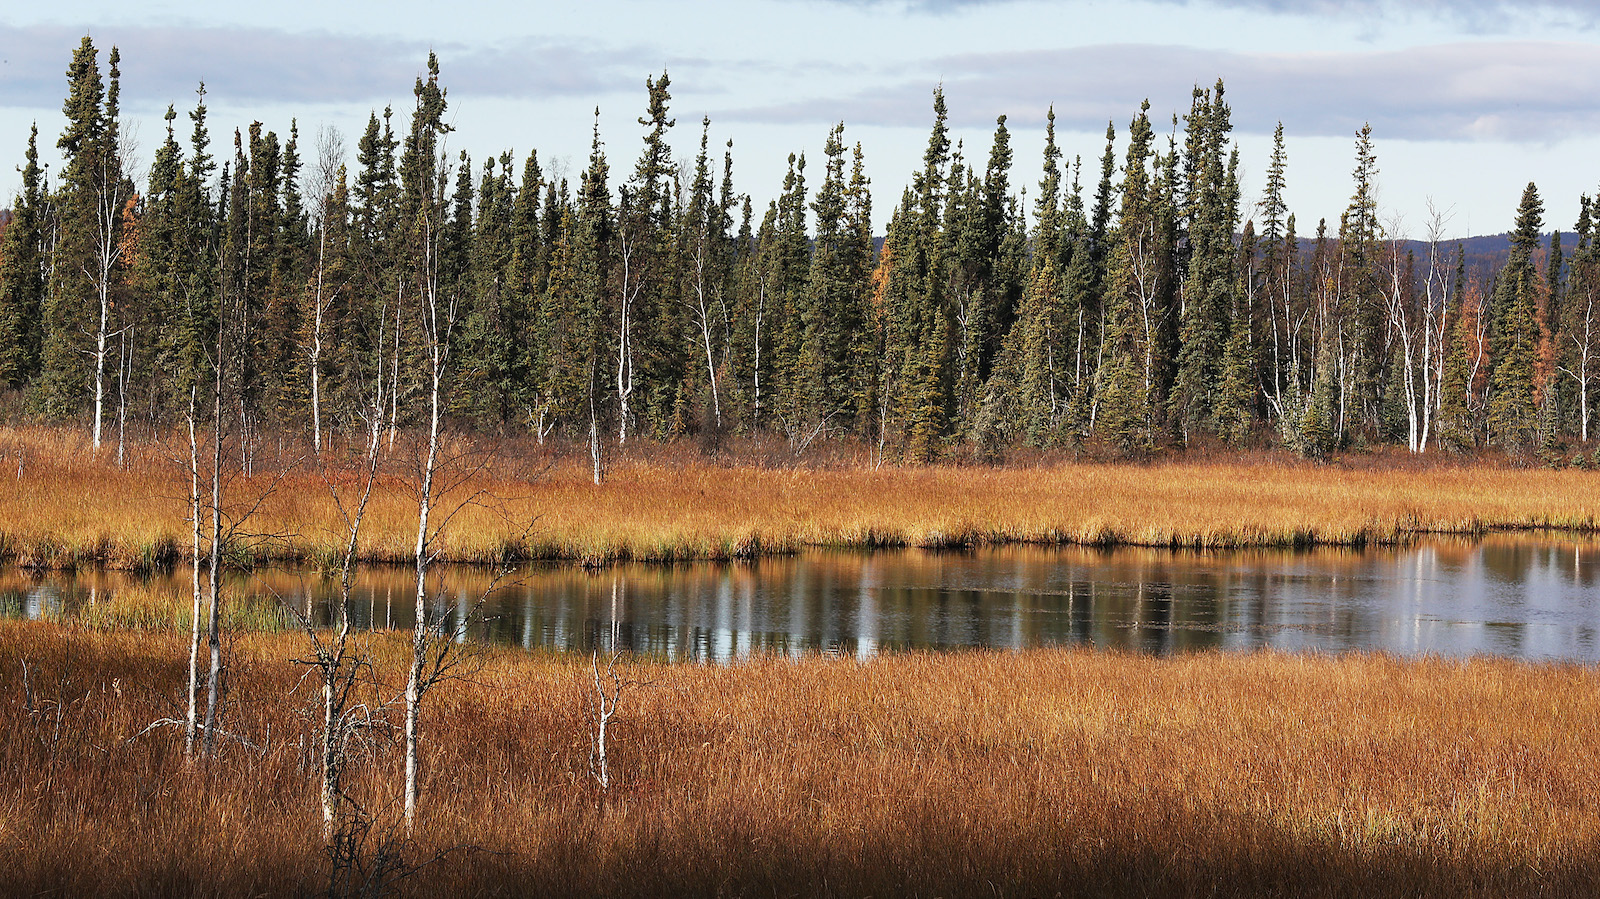 Trans Alaska Pipeline Serves As Main Artery For Alaska's North Slope Oil Fields